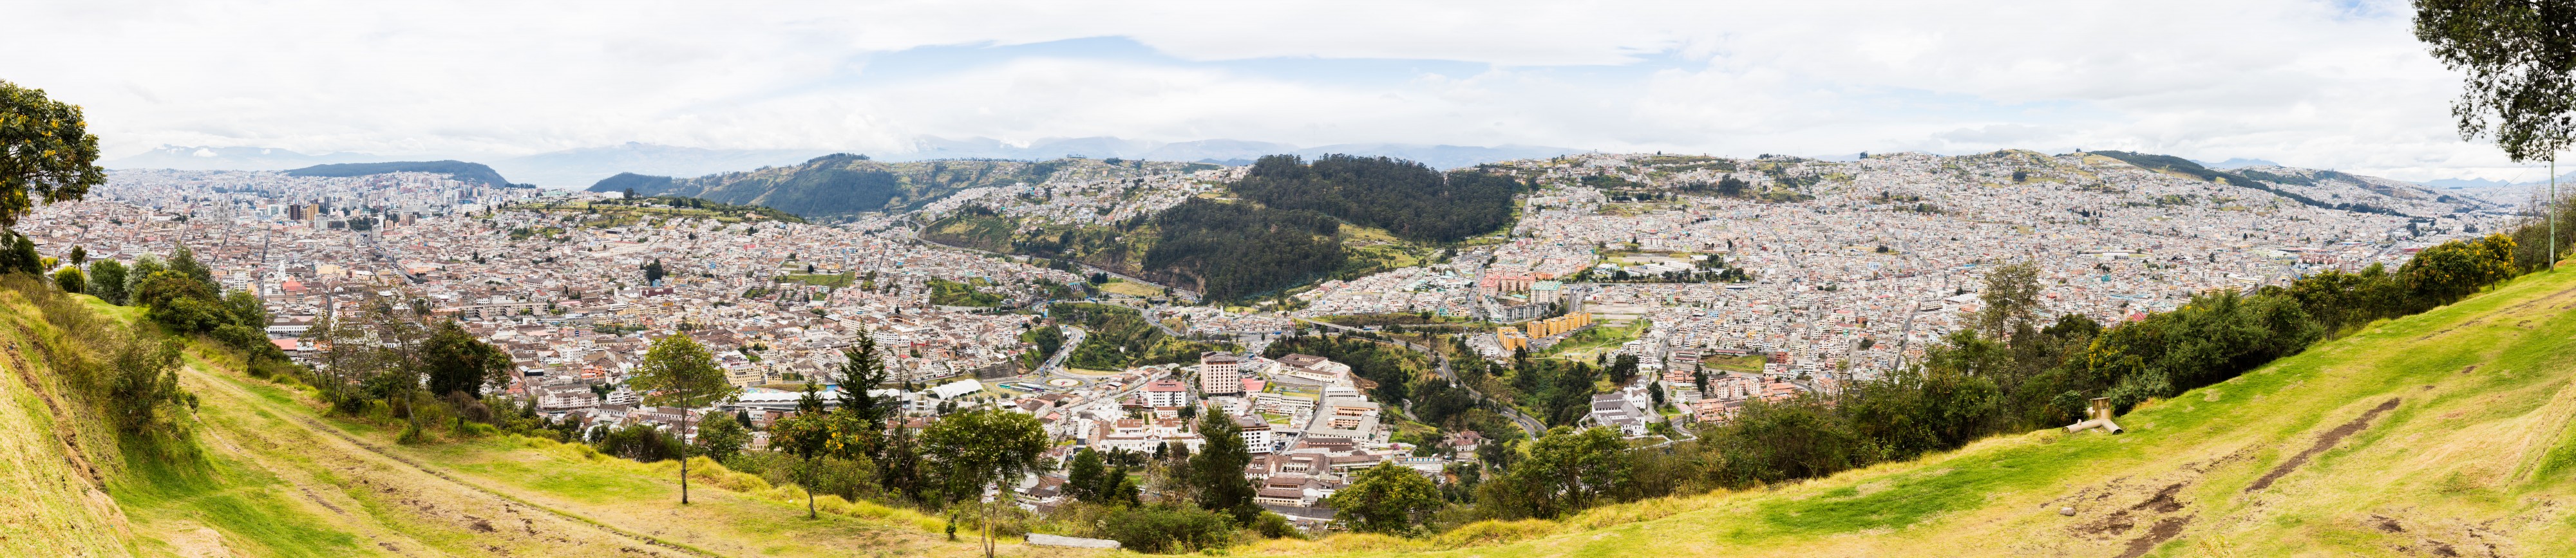 Vista de Quito desde El Panecillo, Ecuador, 2015-07-22, DD 25-29 PAN